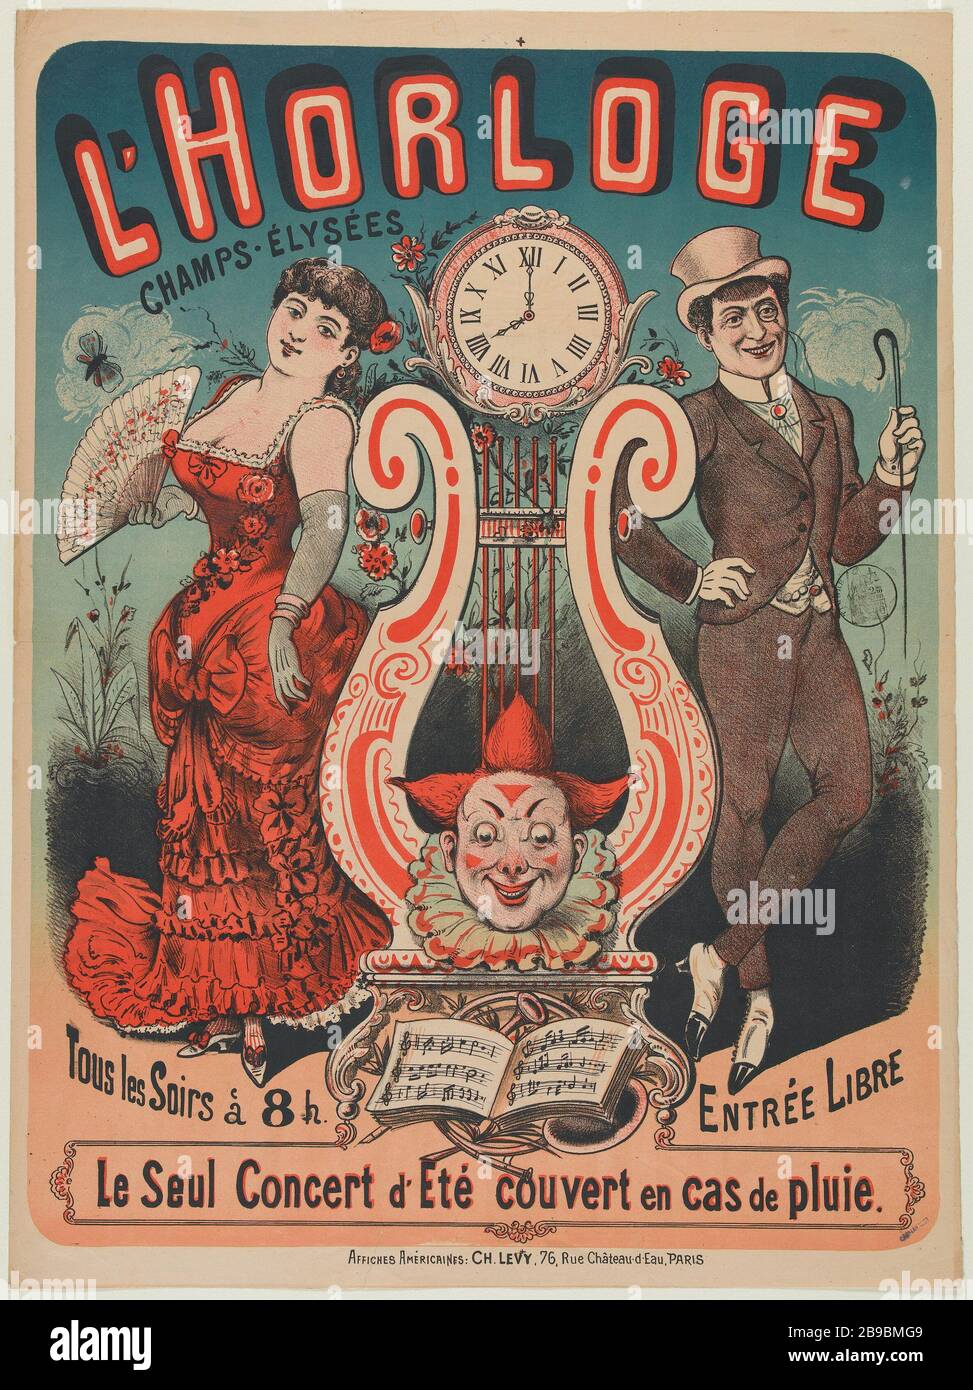 RELOJ, CADA NOCHE ANONYME. 'Horloge, Tous les soirs'. Lithographie, 1880-1900. París, musée Carnavalet. Foto de stock